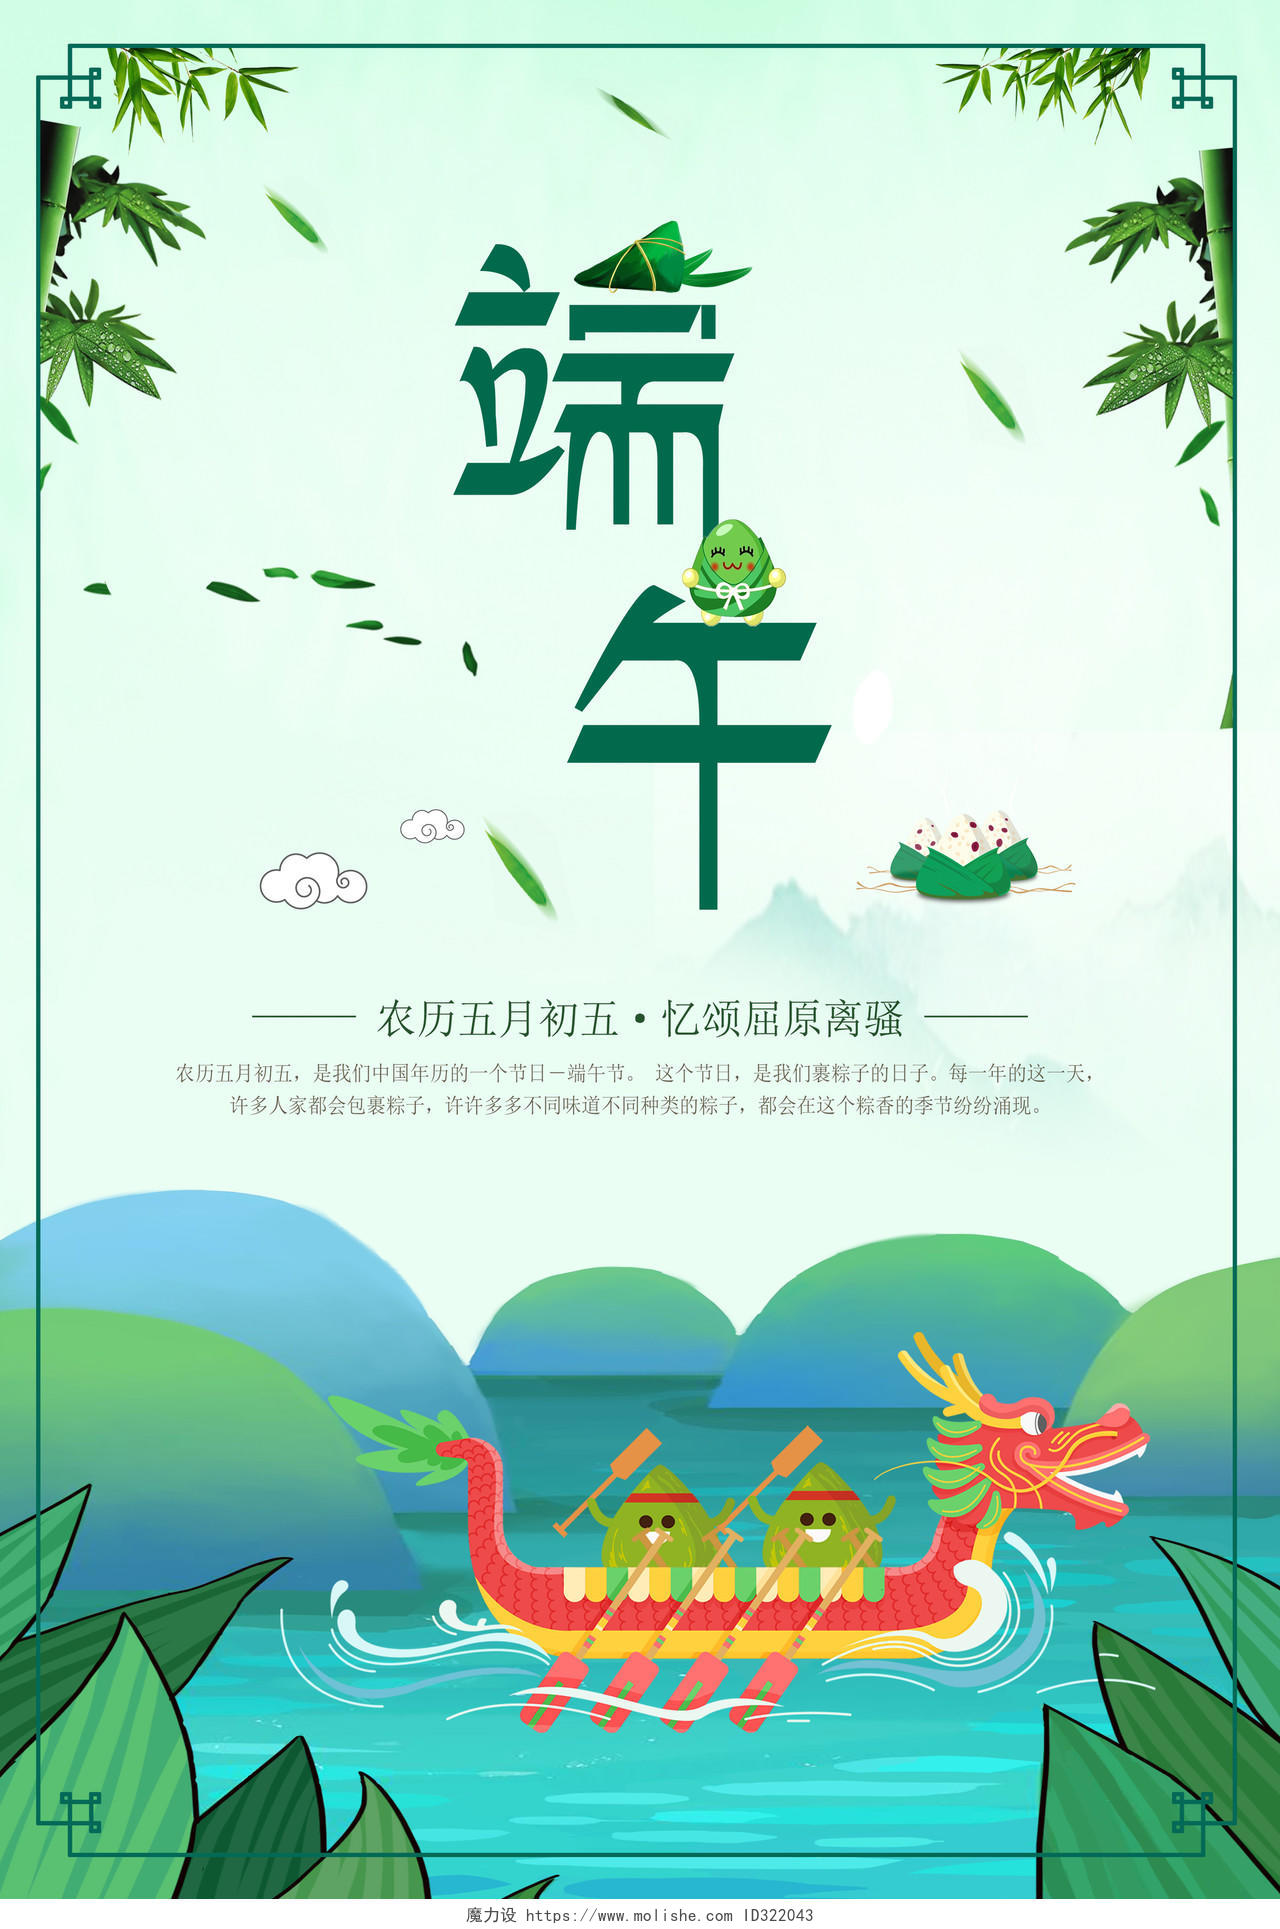 节日五月初五端午节赛龙舟绿色背景海报